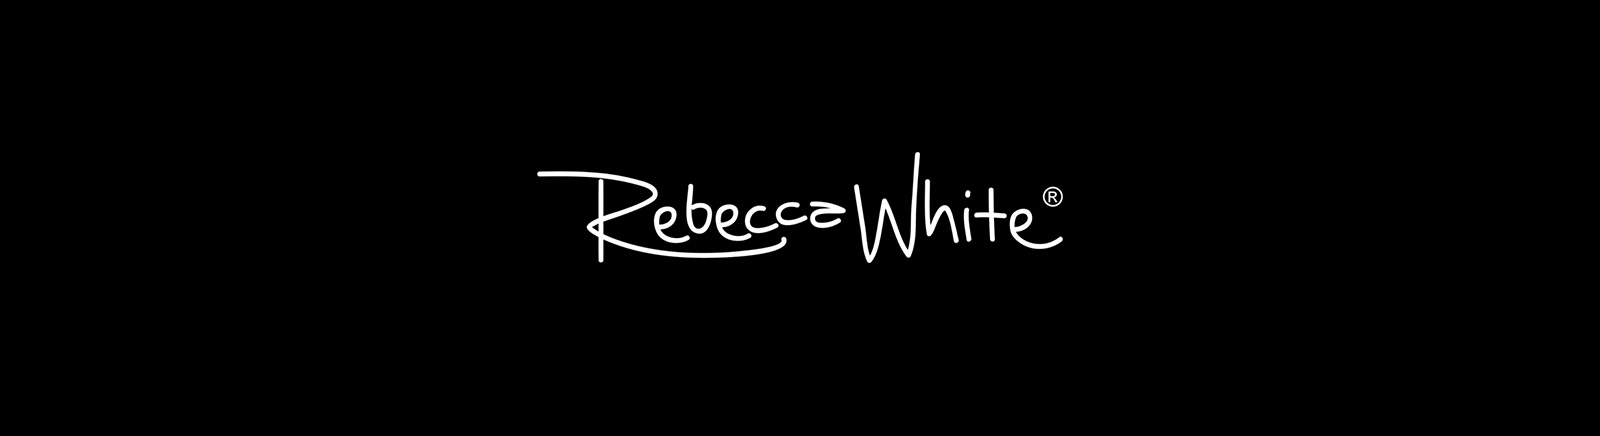 Rebecca White Damenschuhe online kaufen im Juppen Shop